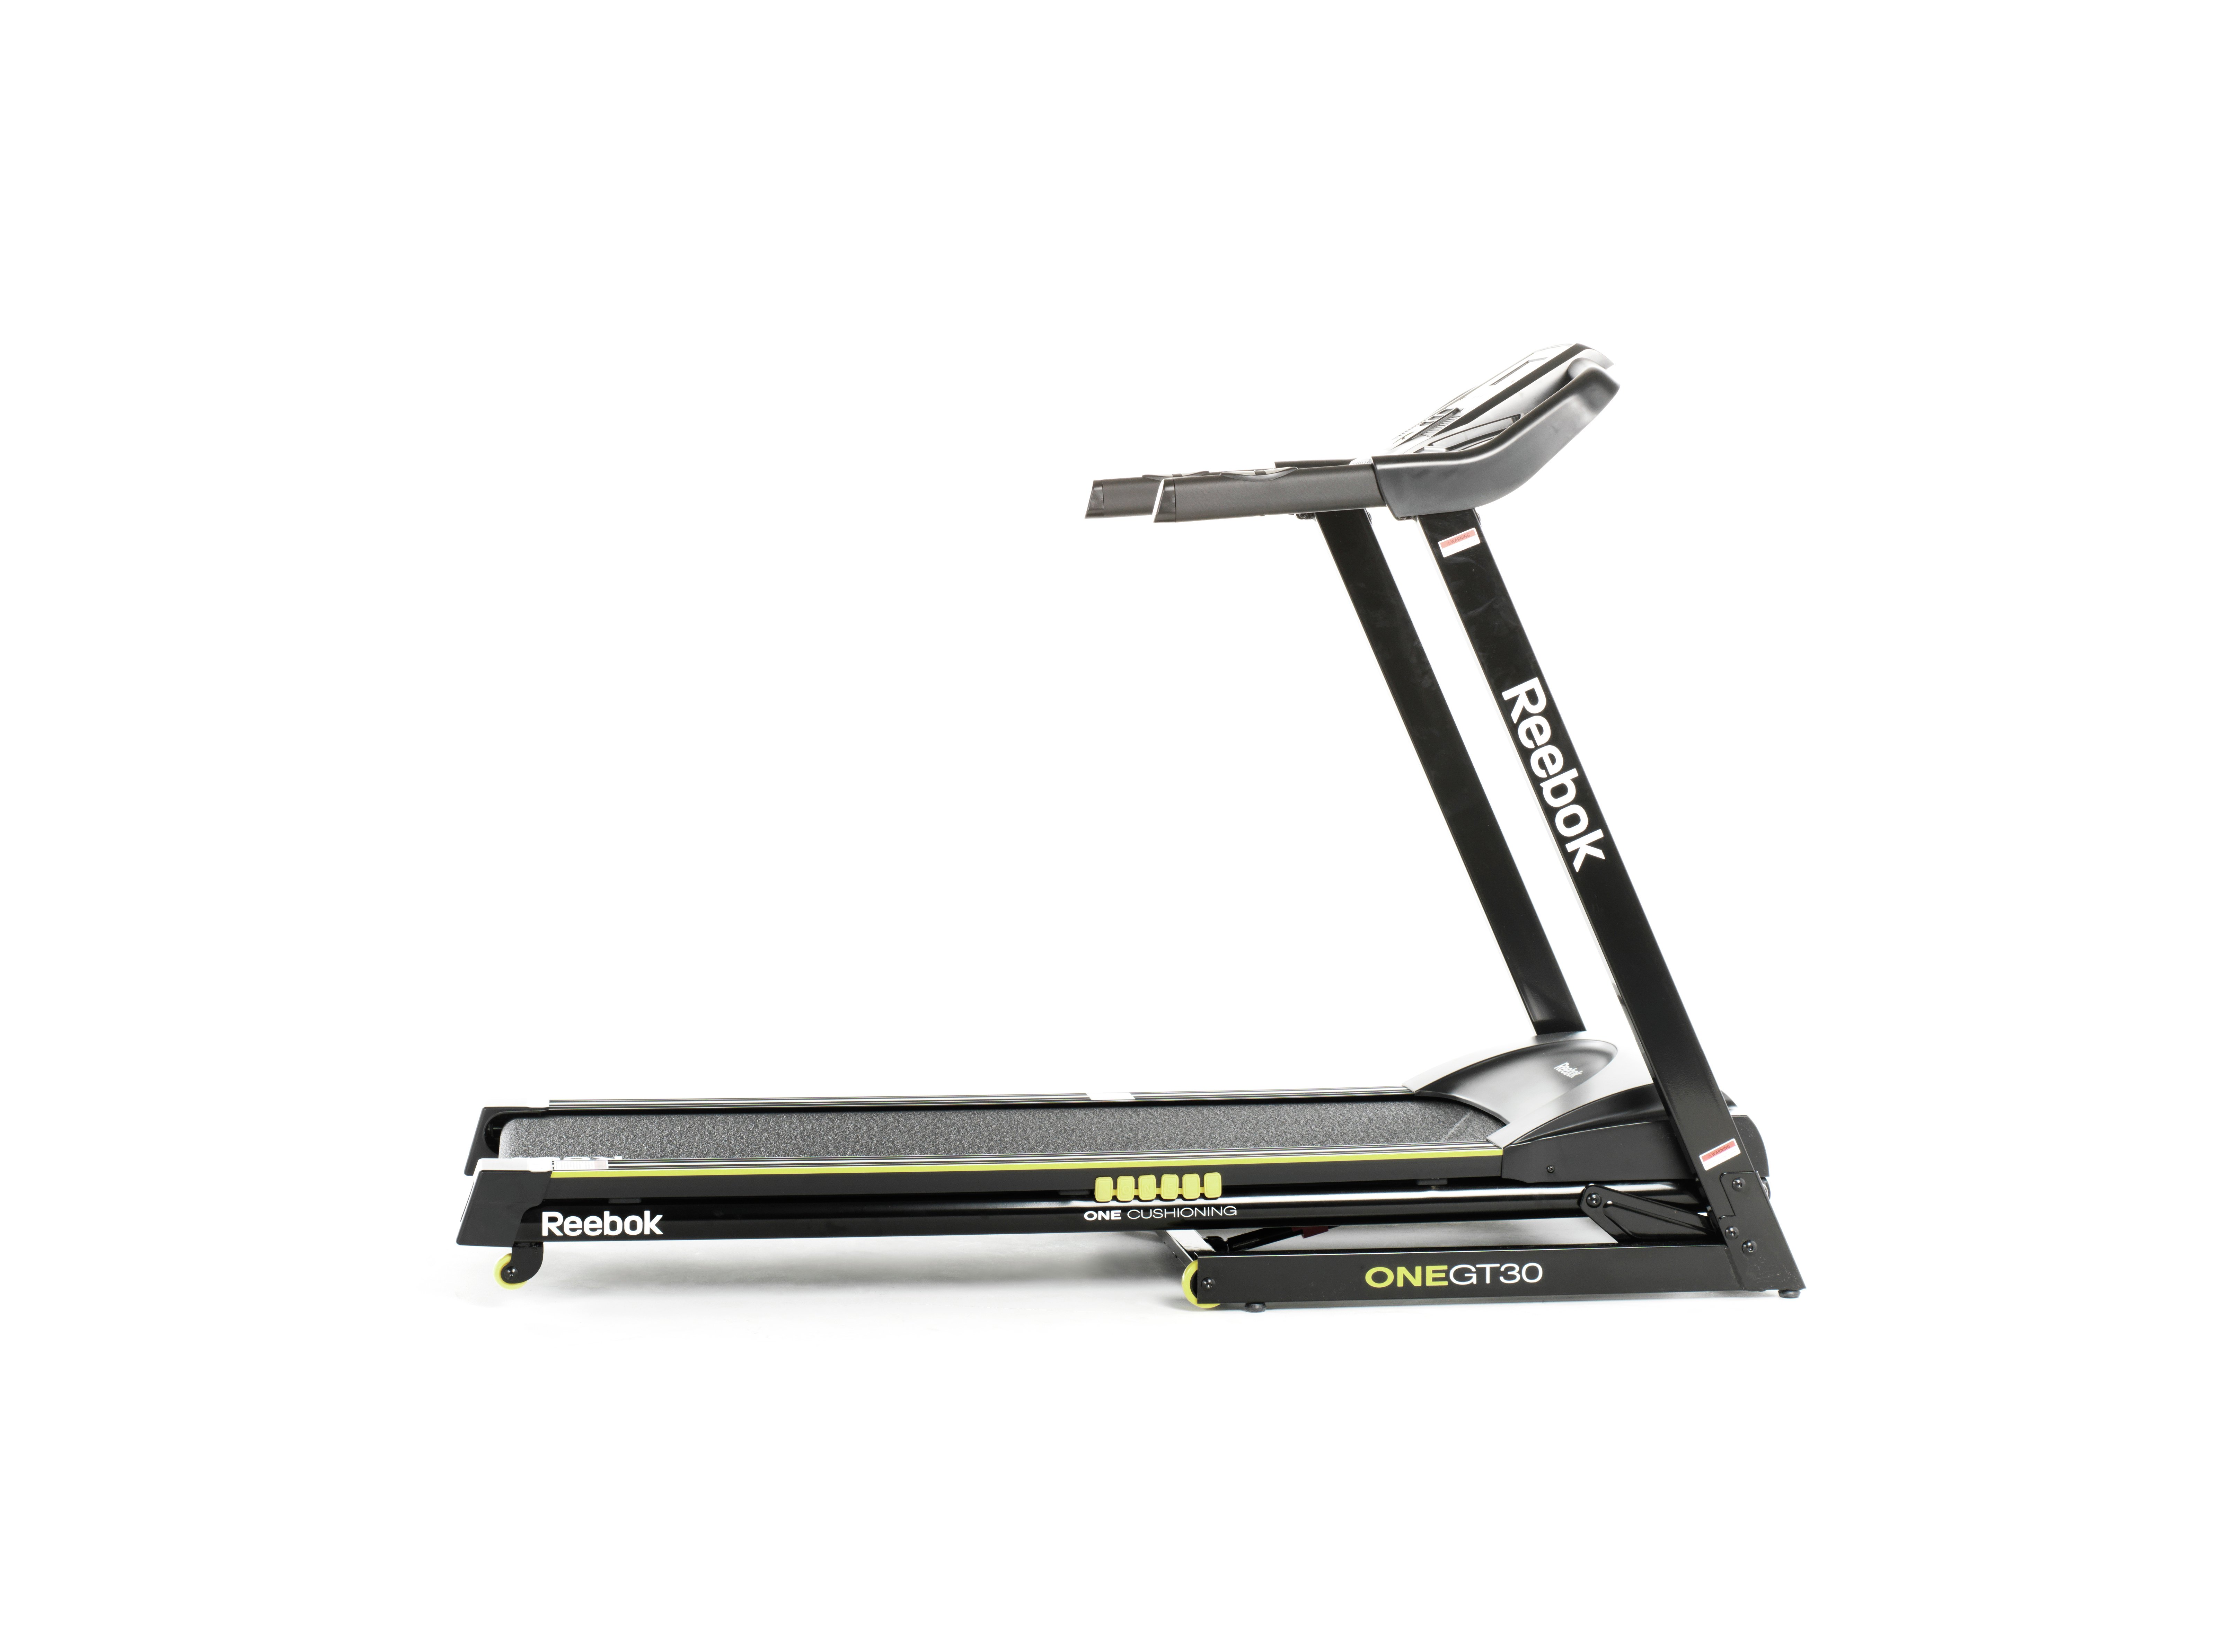 reebok one series gt30 treadmill manual